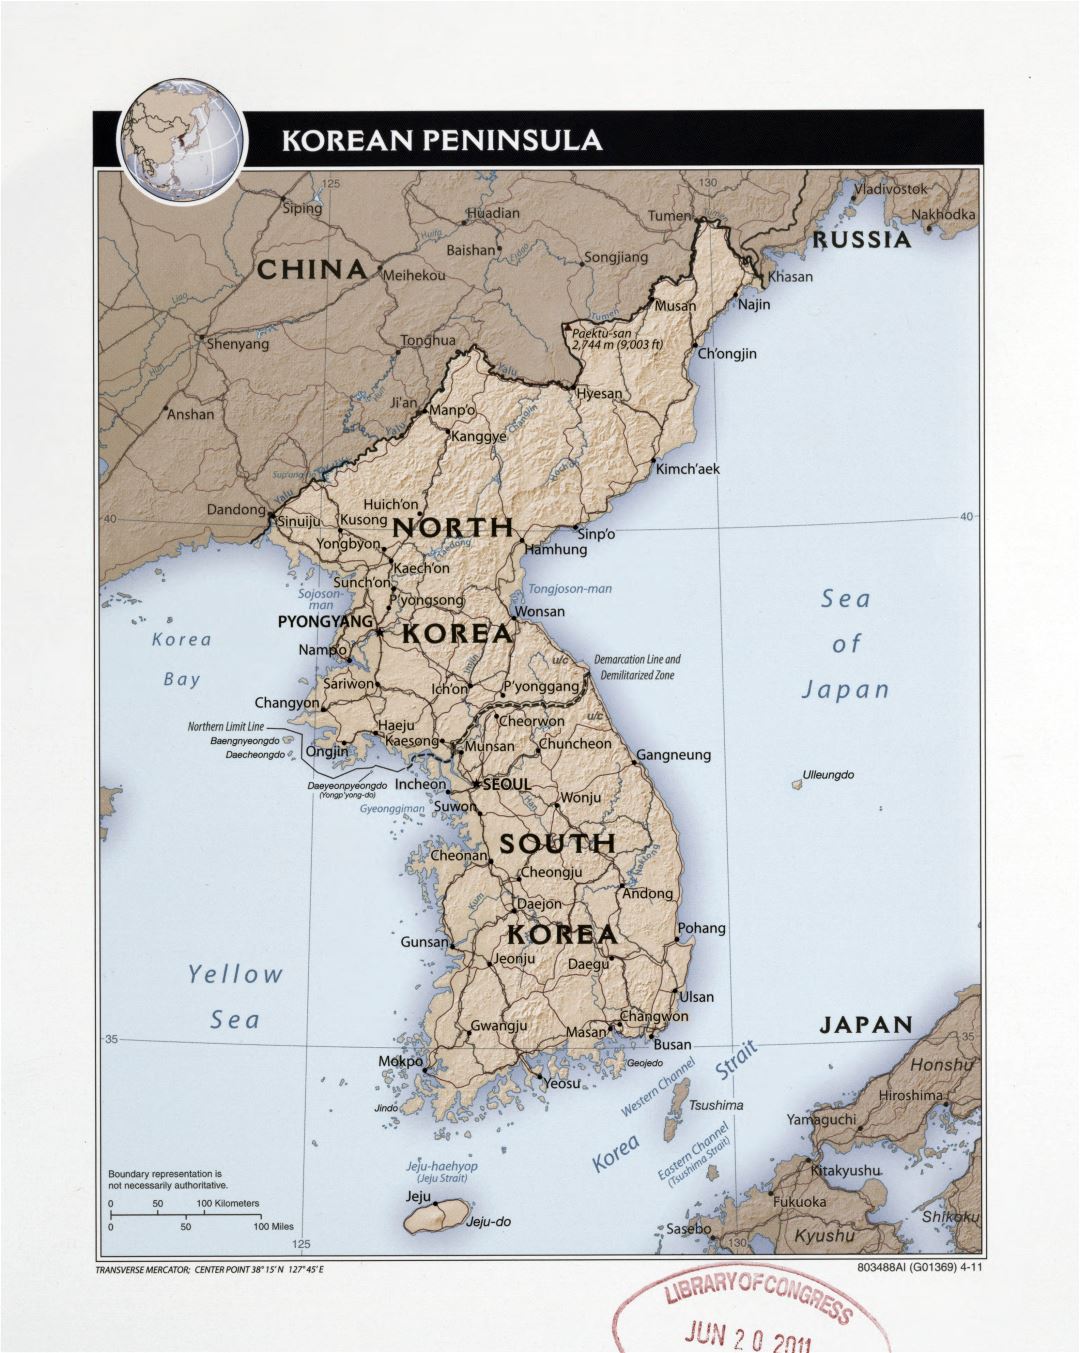 Grande detallado mapa político de la Península de Corea con socorro, carreteras, ferrocarriles y principales ciudades - 2011